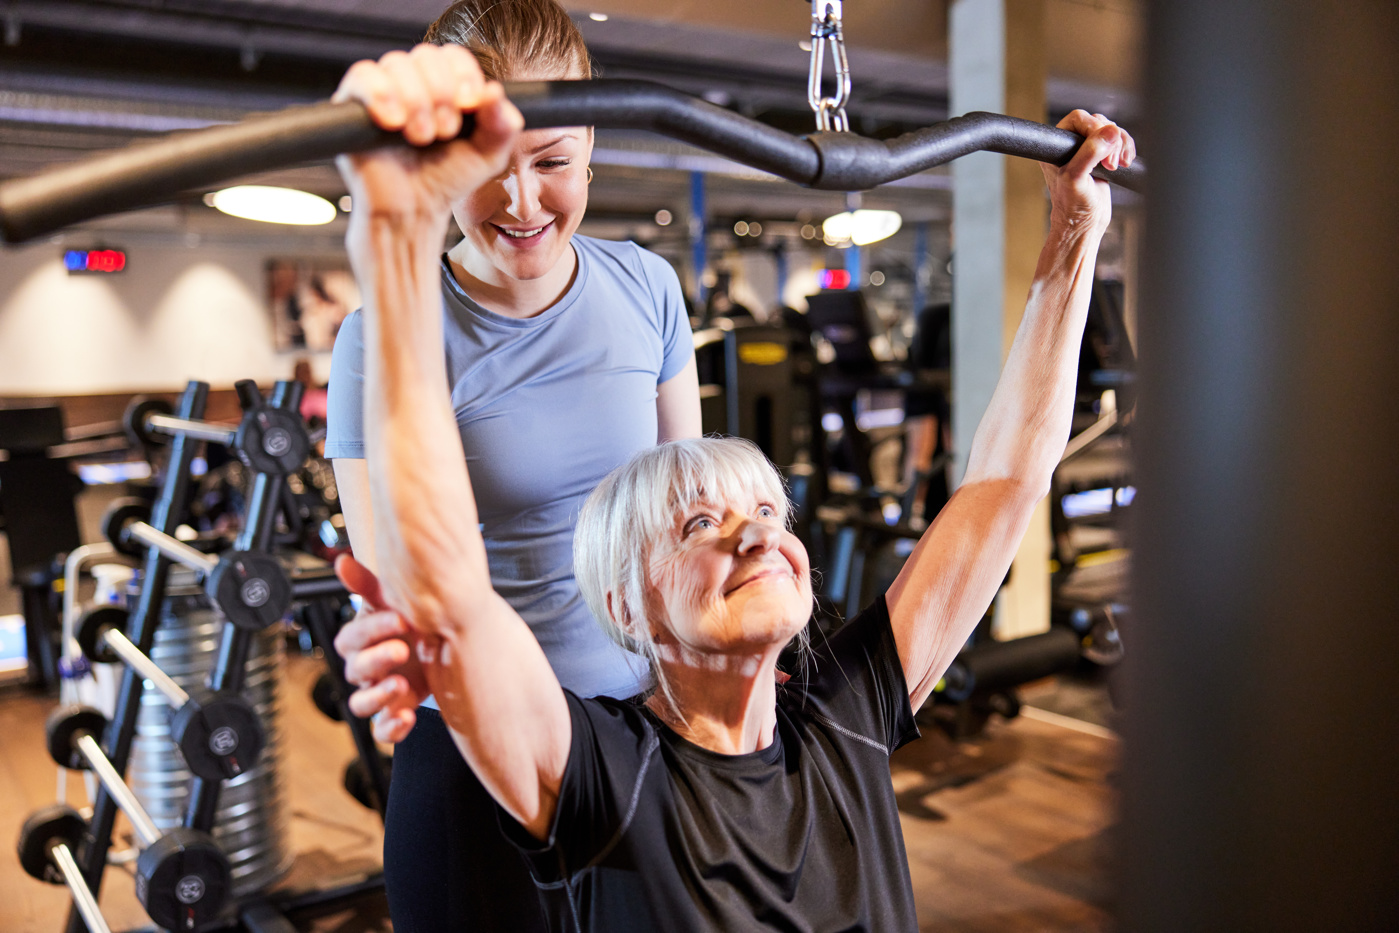 Une spécialiste en promotion de l'activité physique et de la santé avec brevet fédéral guide une cliente dans un centre de fitness pour qu'elle utilise correctement un appareil d'entraînement.